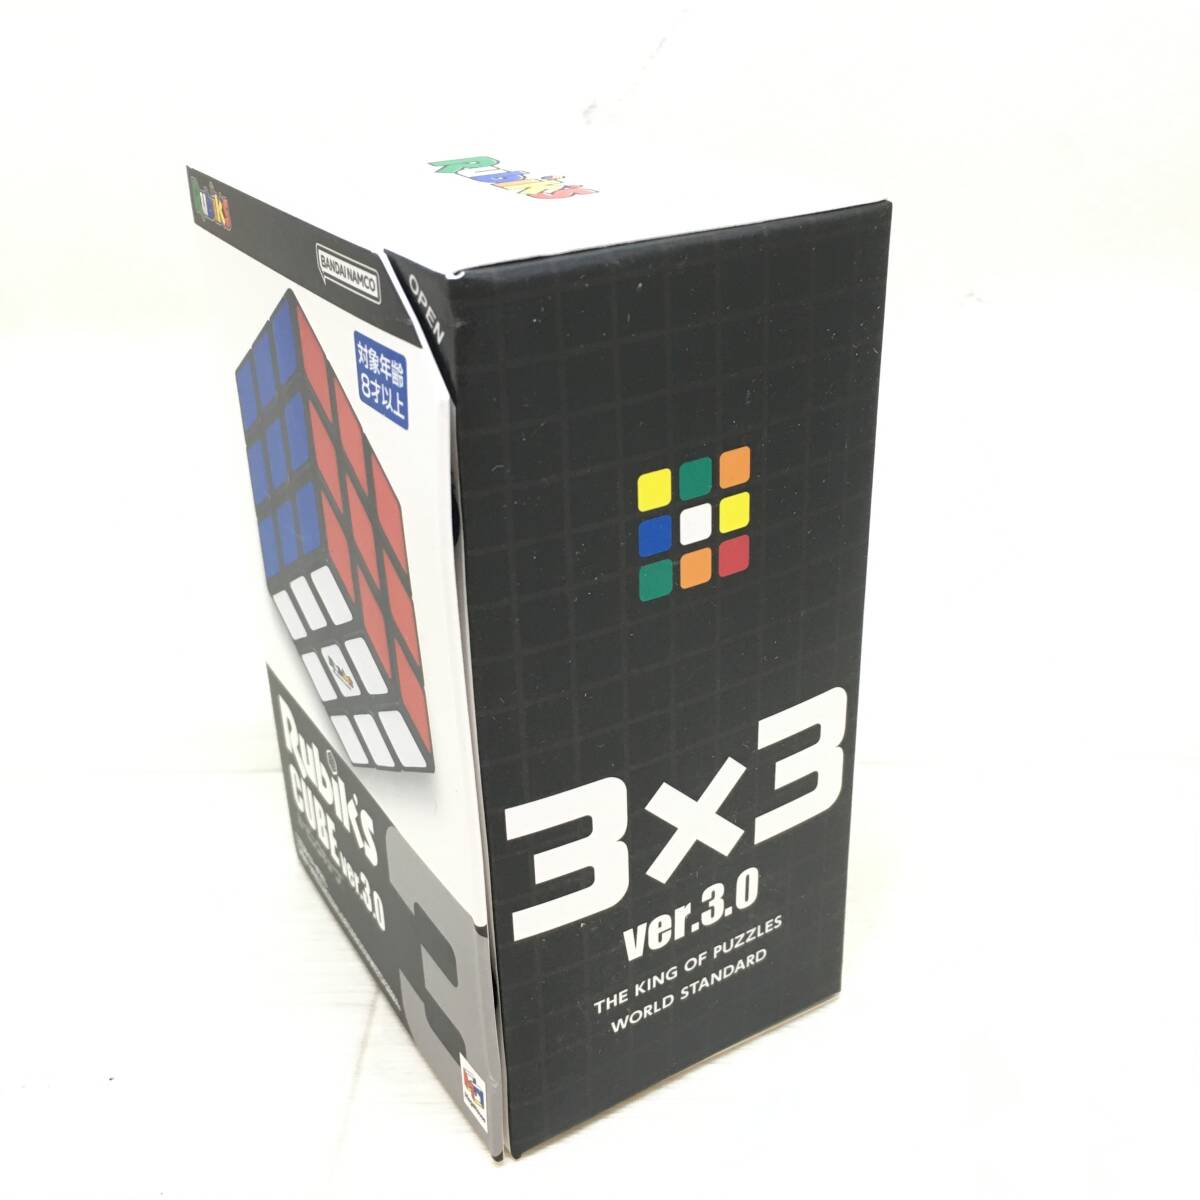 Σ unopened BANDAI NAMCO Bandai Rubiks CUBE Rubik's Cube ver.3.0 solid puzzle toy intellectual training toy colorful present condition goods ΣK52482